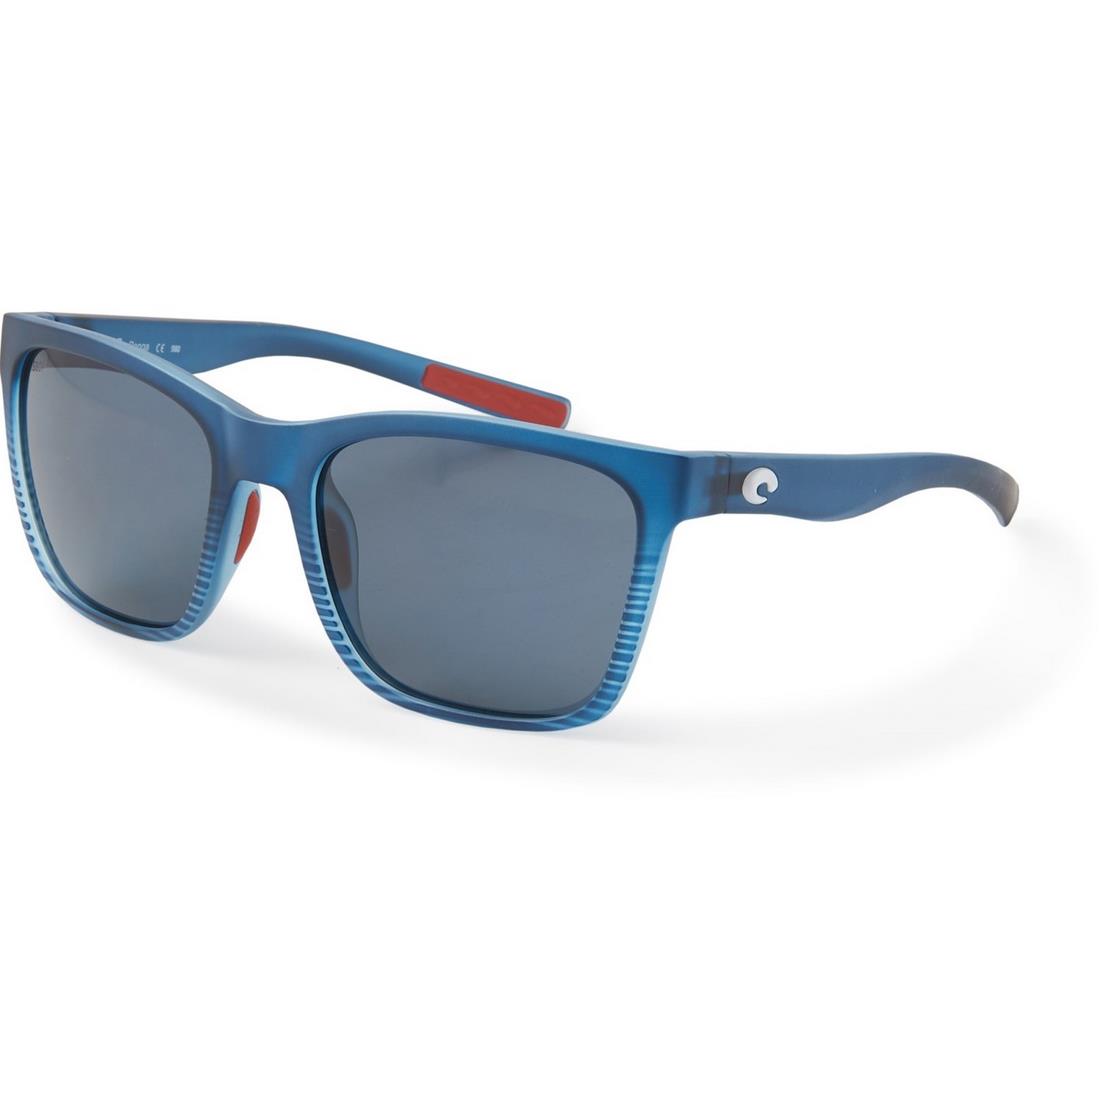 Costa For Men Women Panga Sunglasses - Polarized 580P Lenses Gray 580P - Frame: Gray Mirror 580G